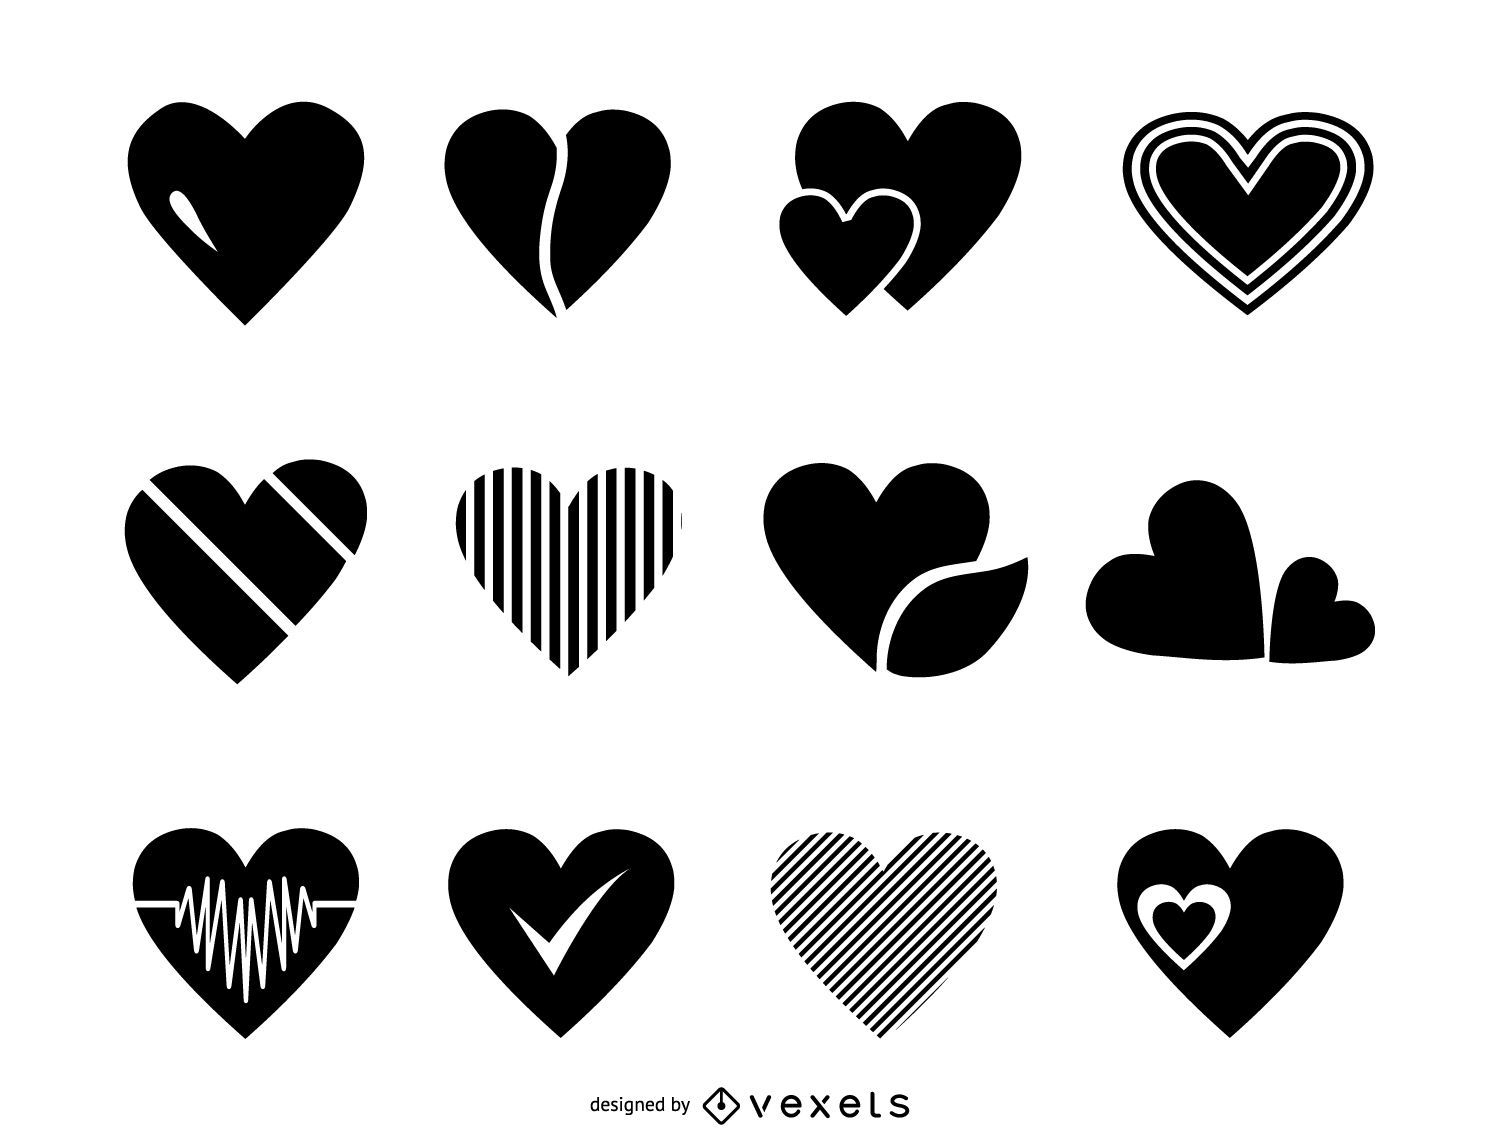 Heart Logo - Bank2home.com